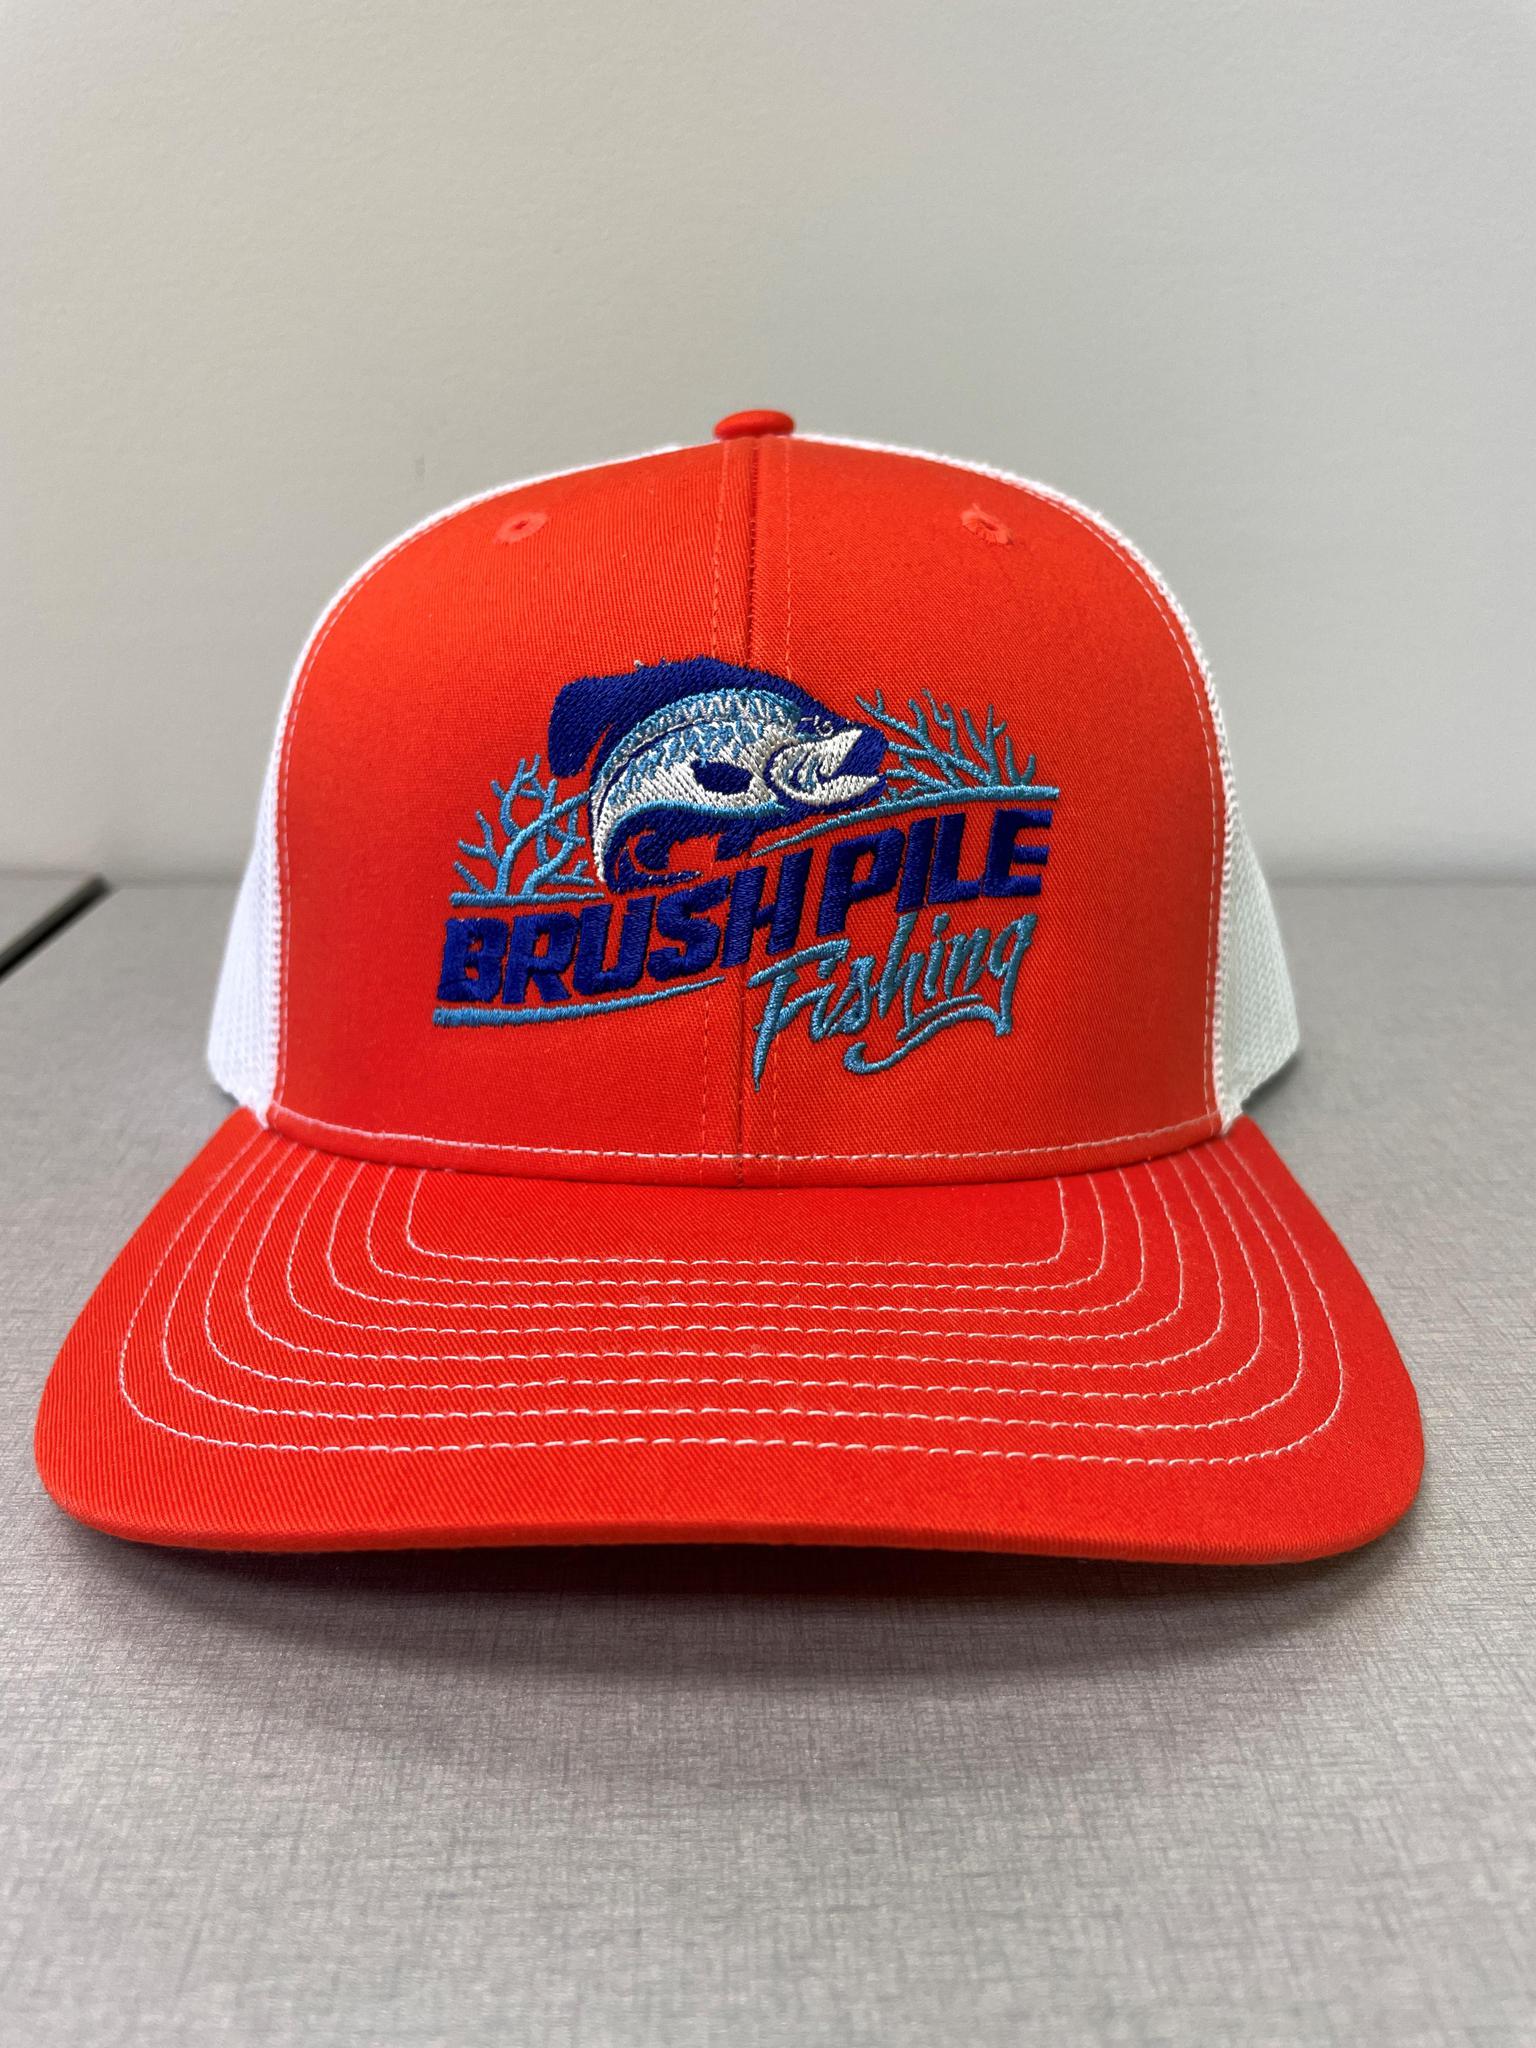 Brushpile Fishing Hat - Orange • BrushPile Fishing